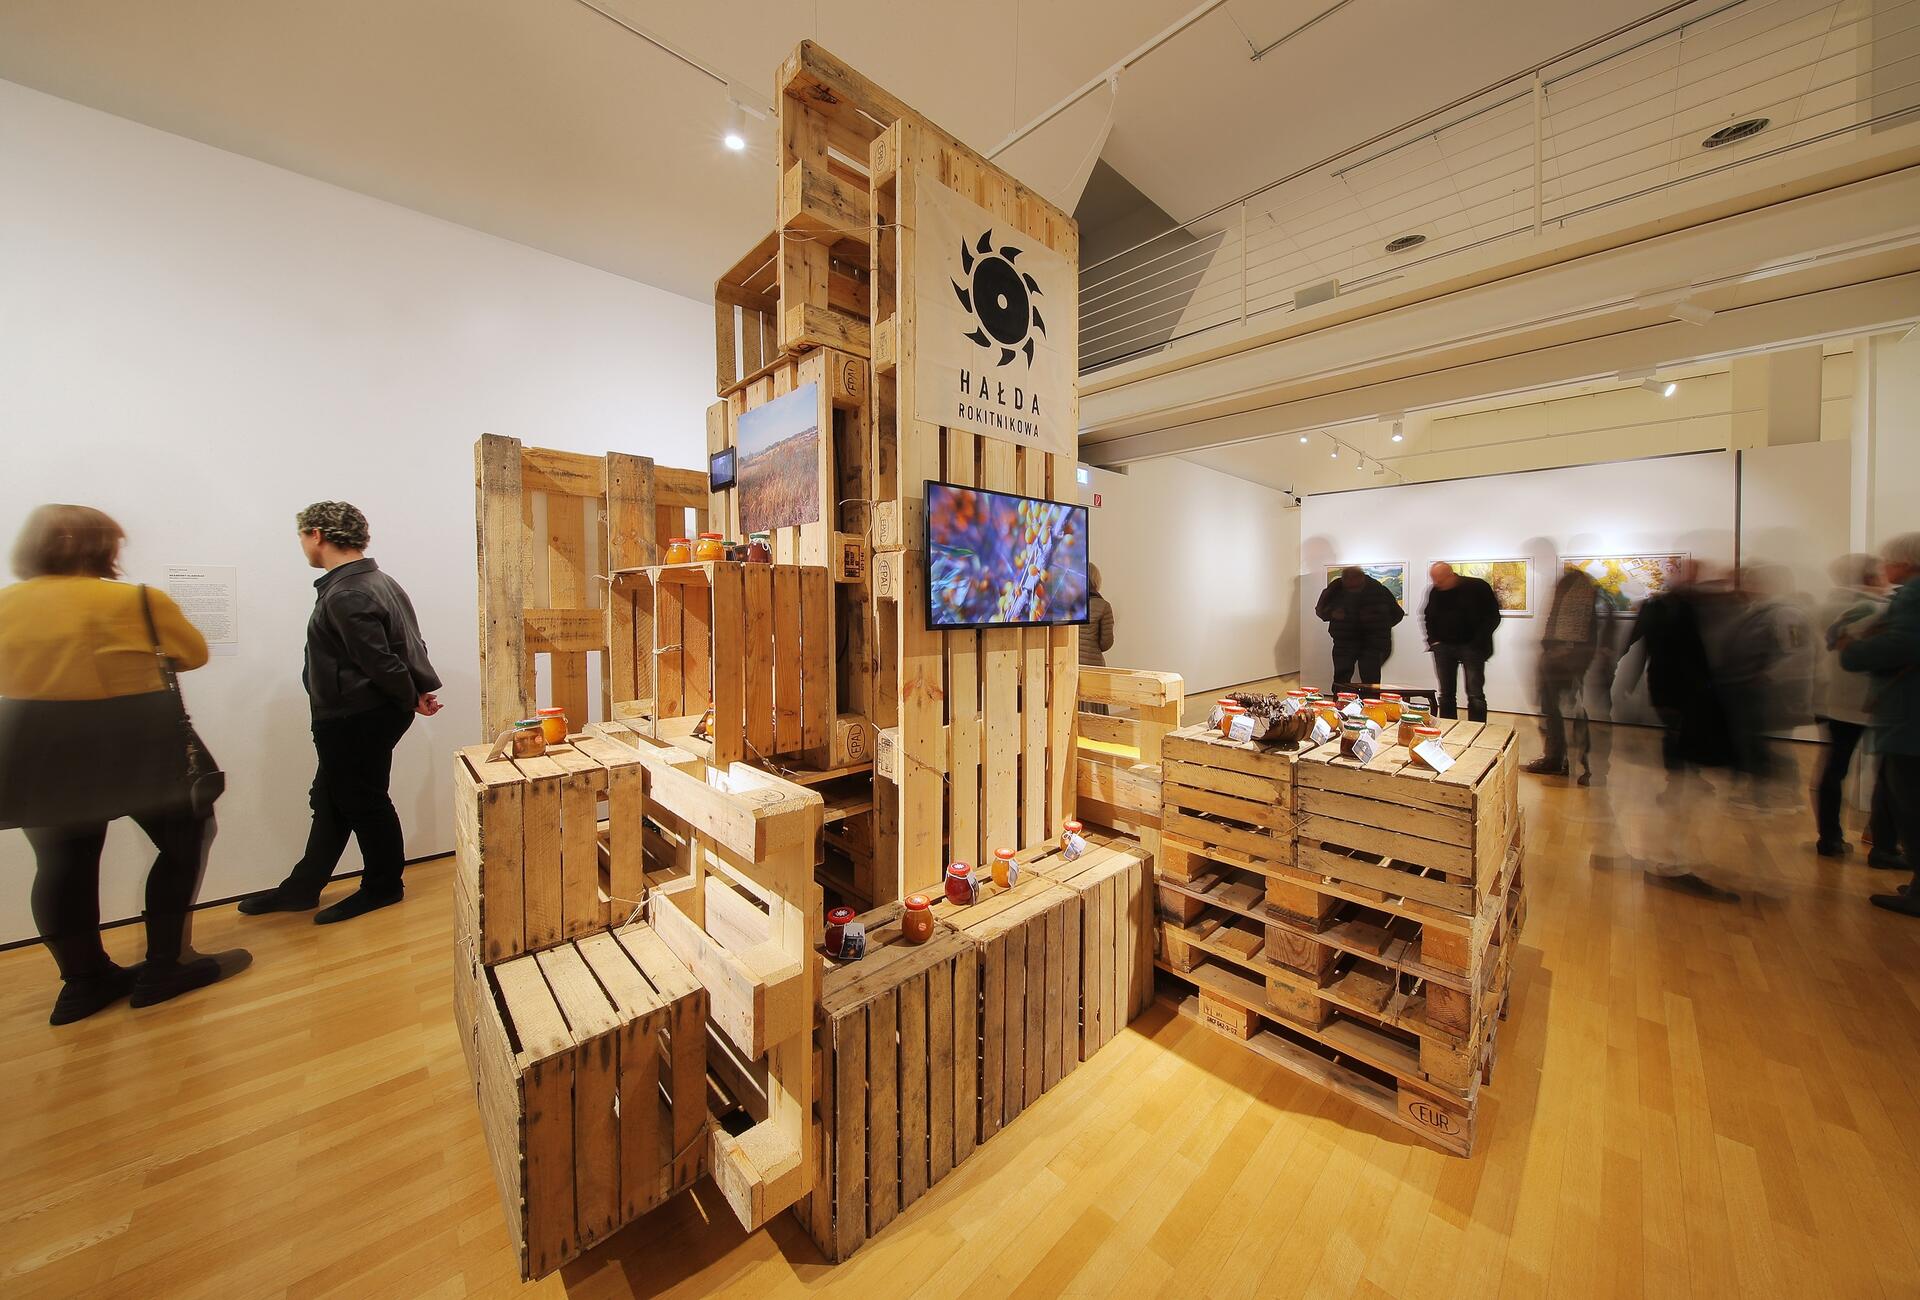 Installationsansicht der Ausstellung "Konsum in der Kunst" mit dem Werk "Seaberry Slagheap" von Diana Lelonek, das aus übereinandergestapelten Europalletten besteht. 